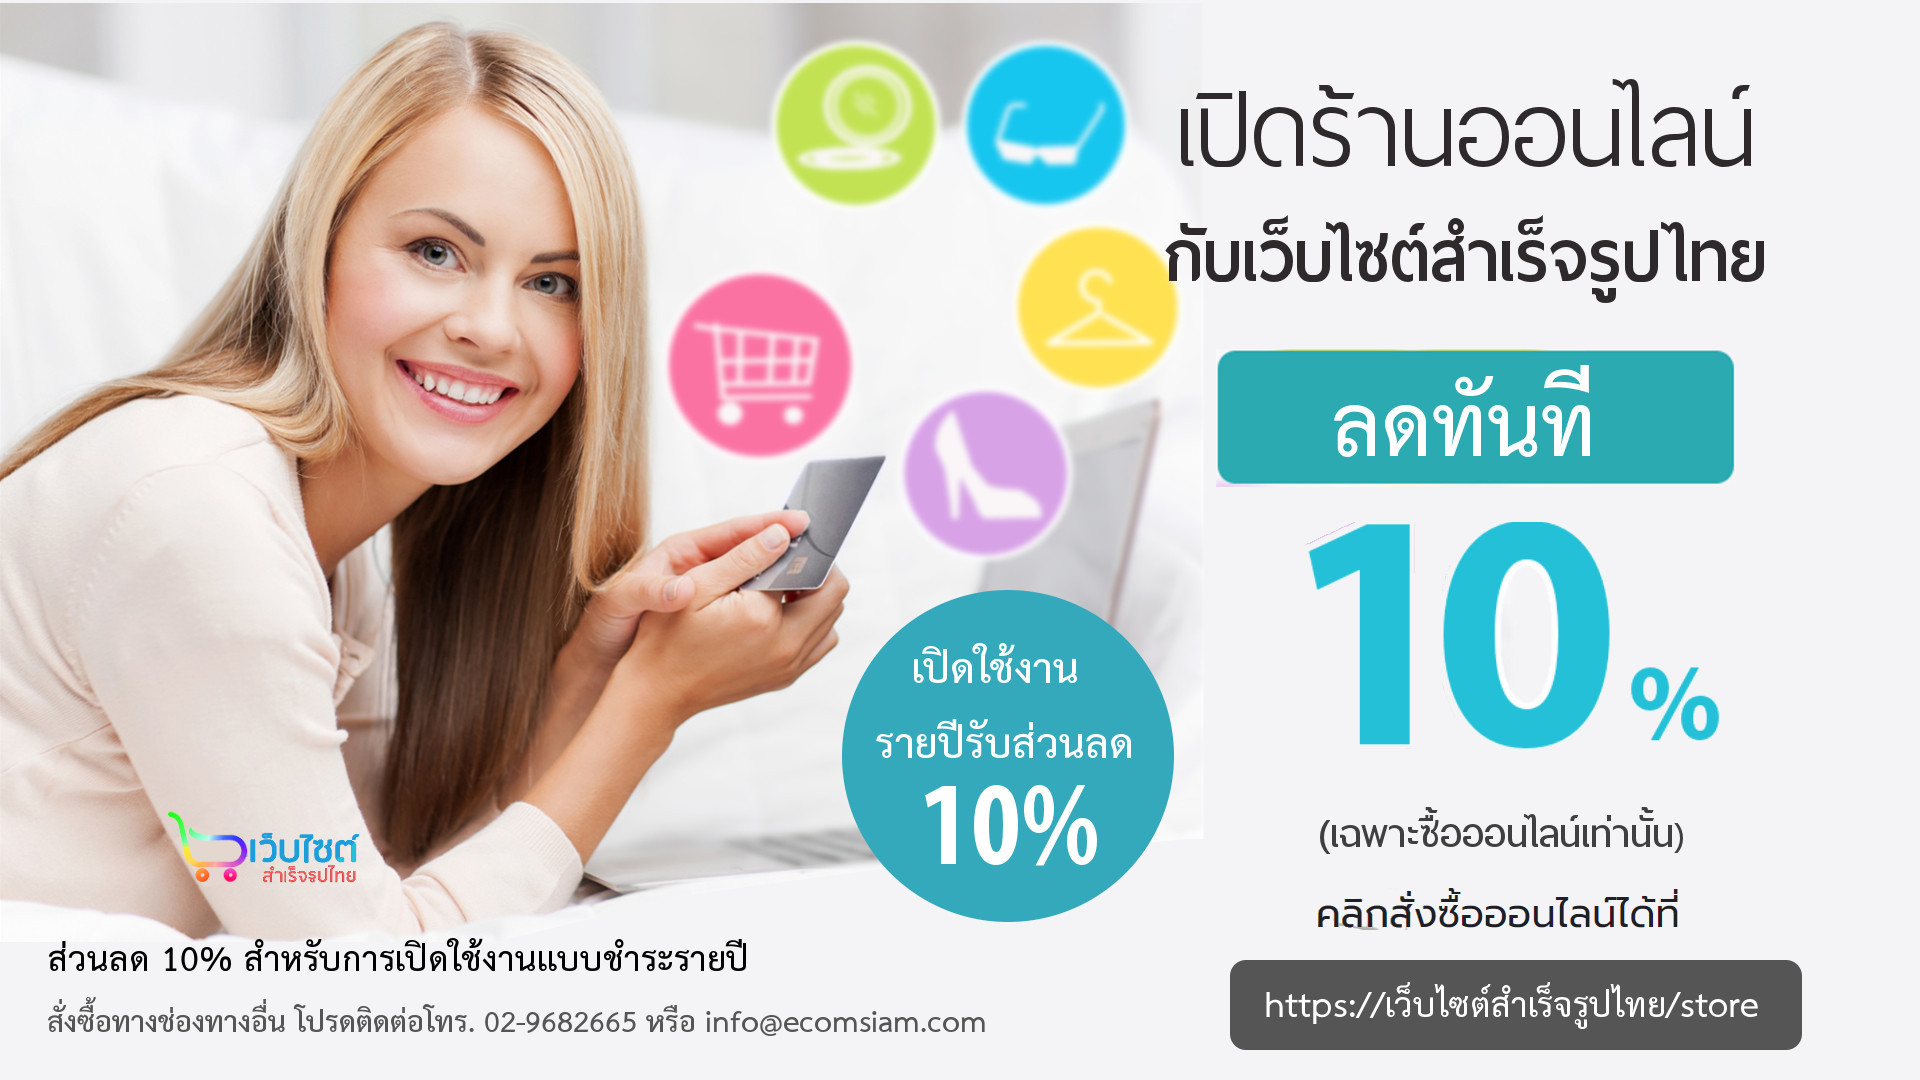 เปิดร้านออนไลน์กับเว็บไซต์สำเร็จรูปไทย รายปี รับส่วนลดทันที 10% พร้อมฟรีโดเมนเนม ระบบอีคอมเมอร์สสำหรับเปิดร้านออนไลน์ ขายของออนไลน์ shopping cart software พร้อม web hosting และการใช้งานอีเมล์ ฟรีโดเมนเนม ฟรี SSL พร้อมติดตั้ง/support/upgrade shopping cart software ตลอดการใช้งาน